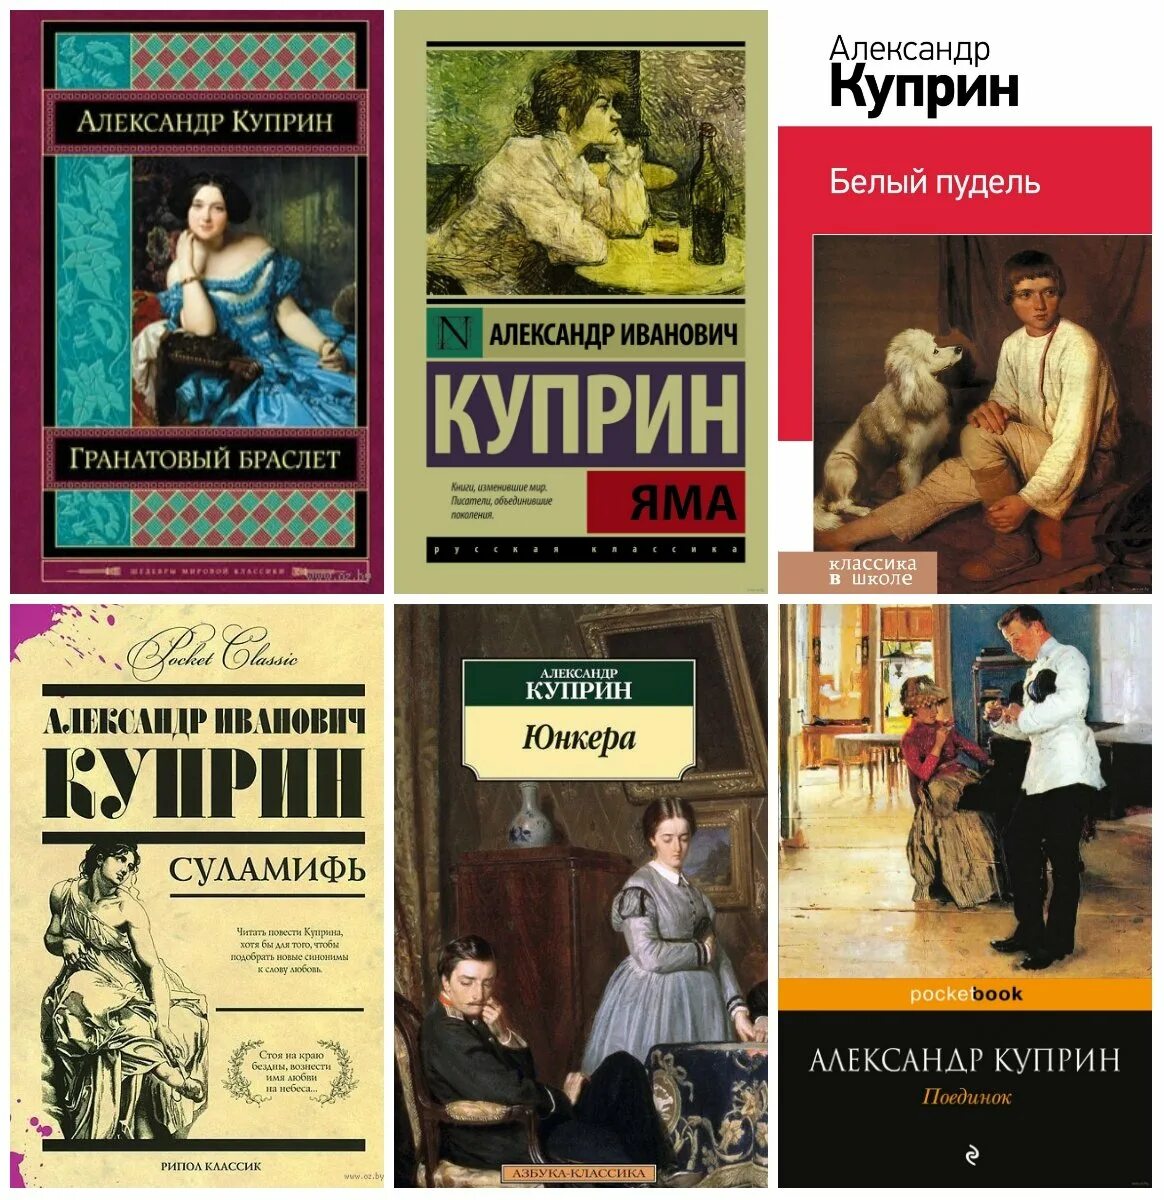 Популярные произведения Куприна. 5 известных произведений